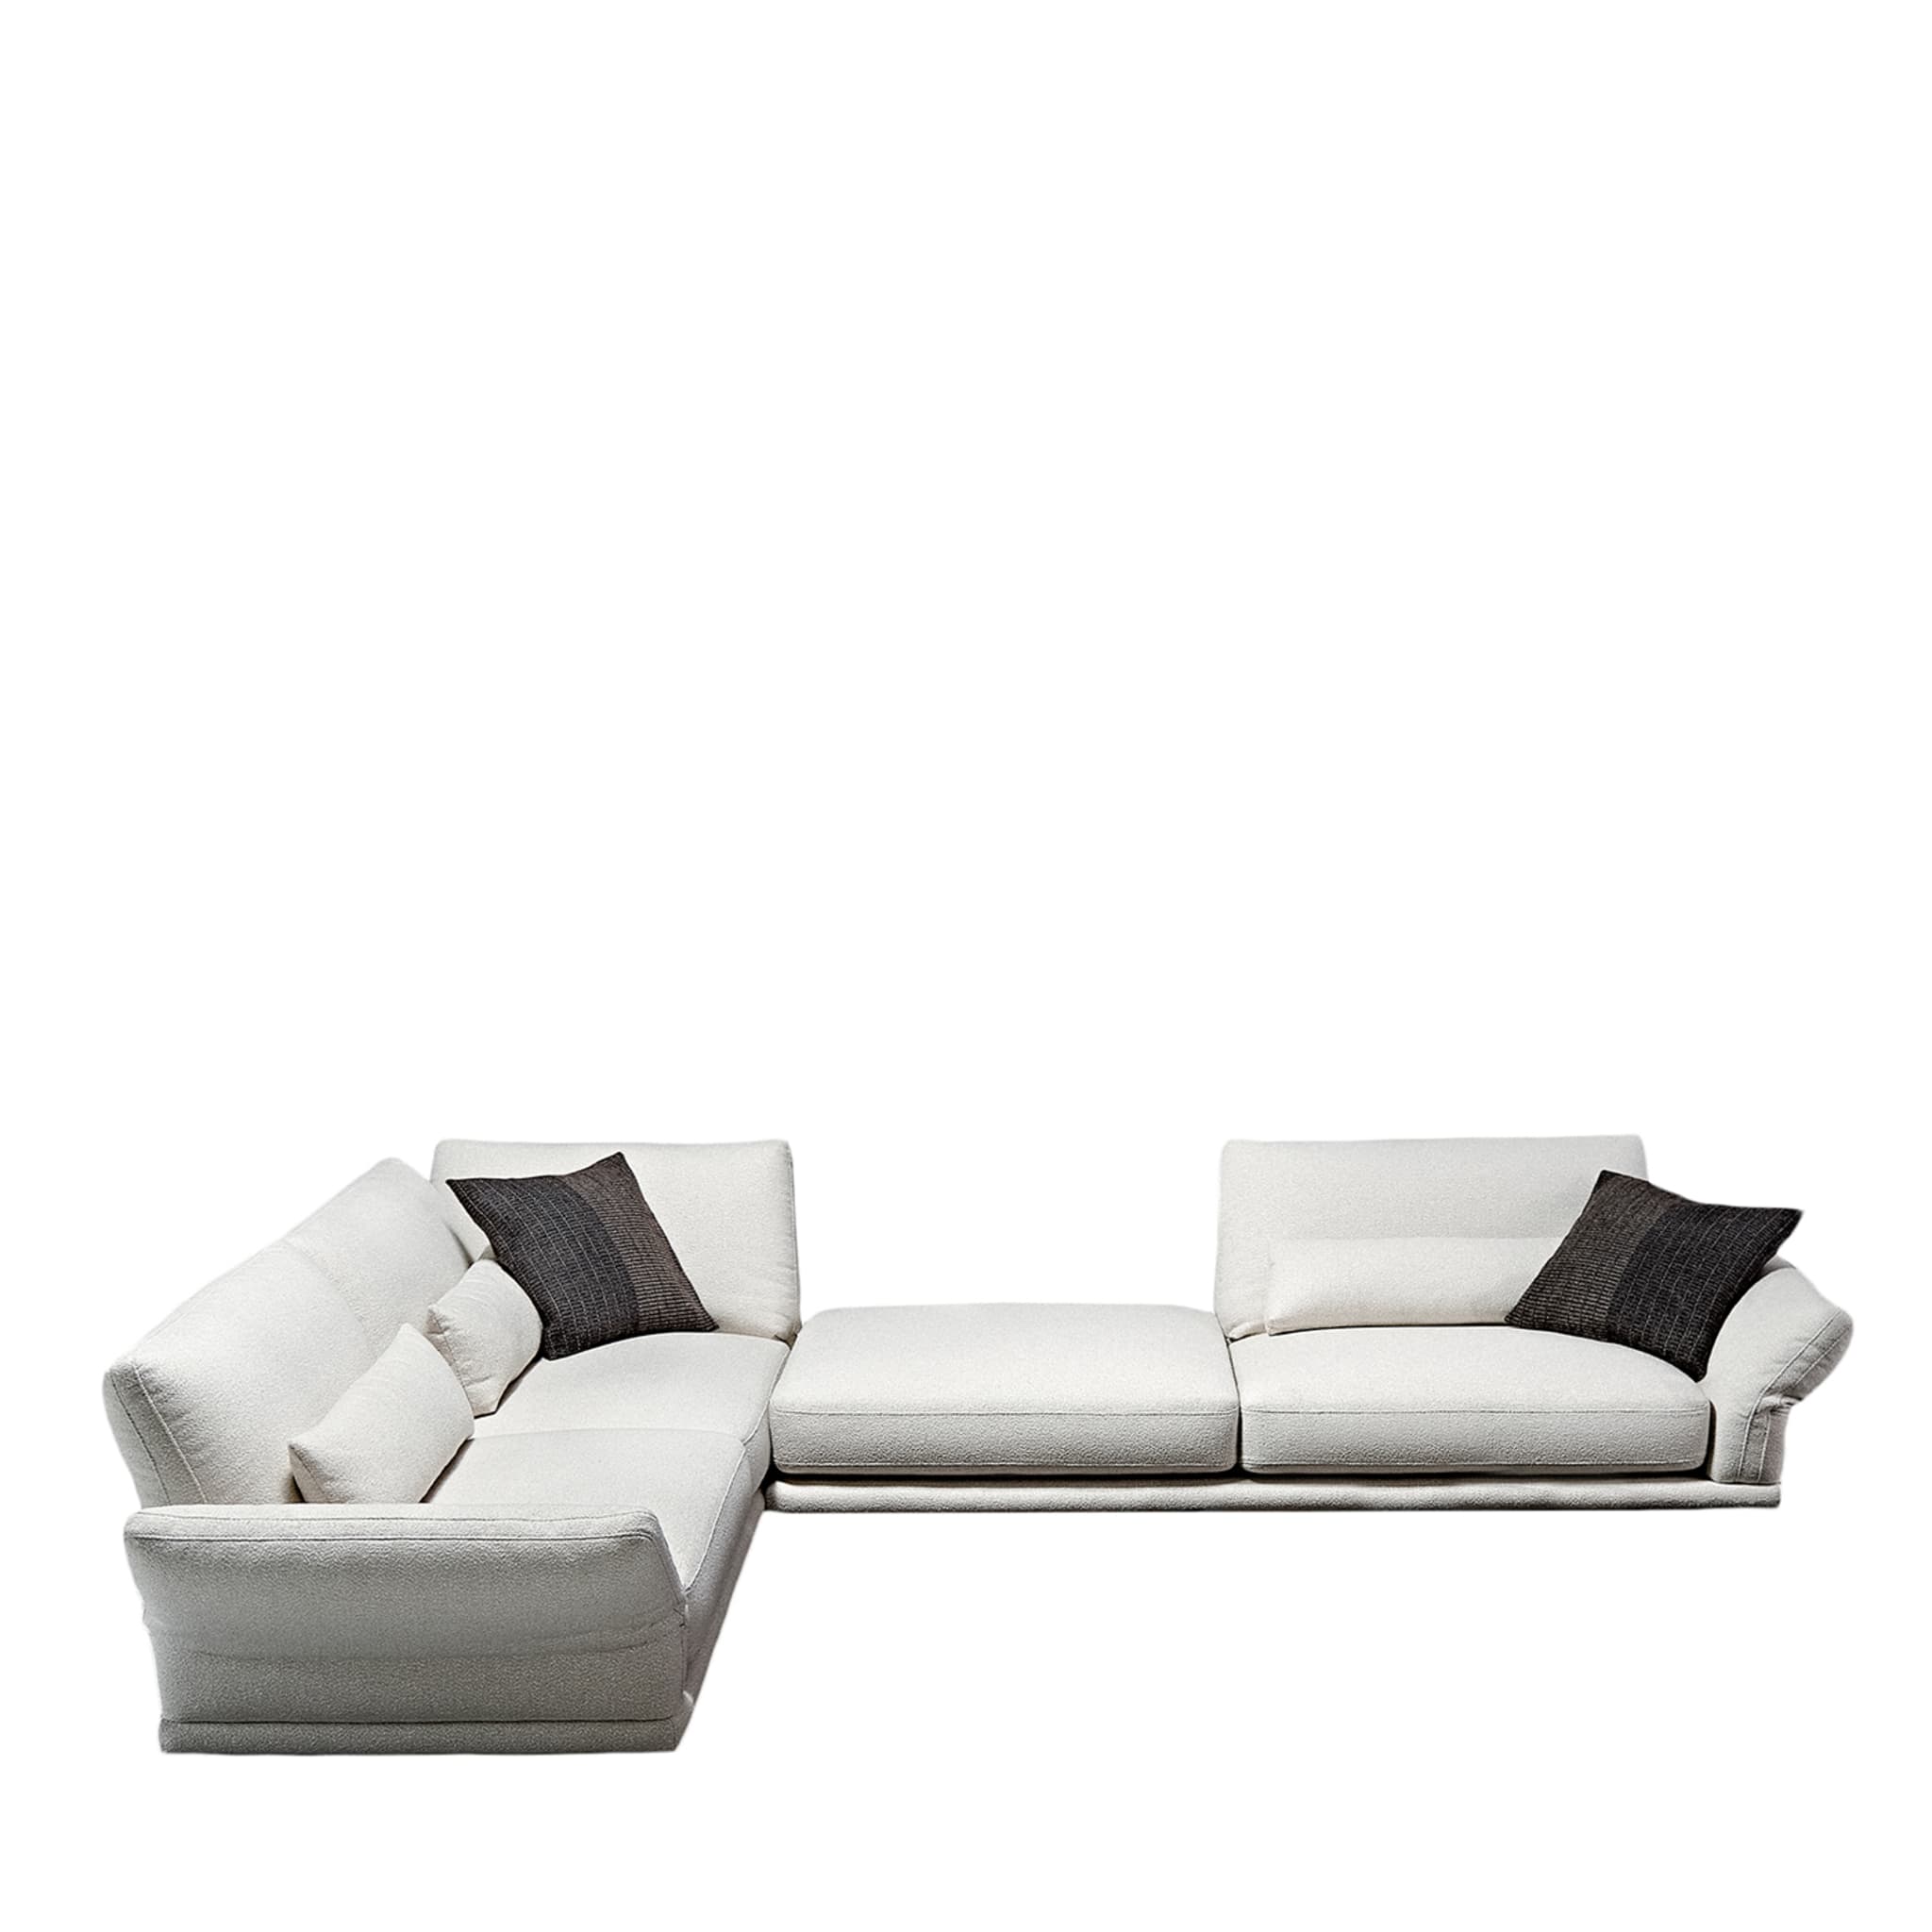 Beverly Modular Angular White Sofa by Ludovica + Roberto Palomba - Main view